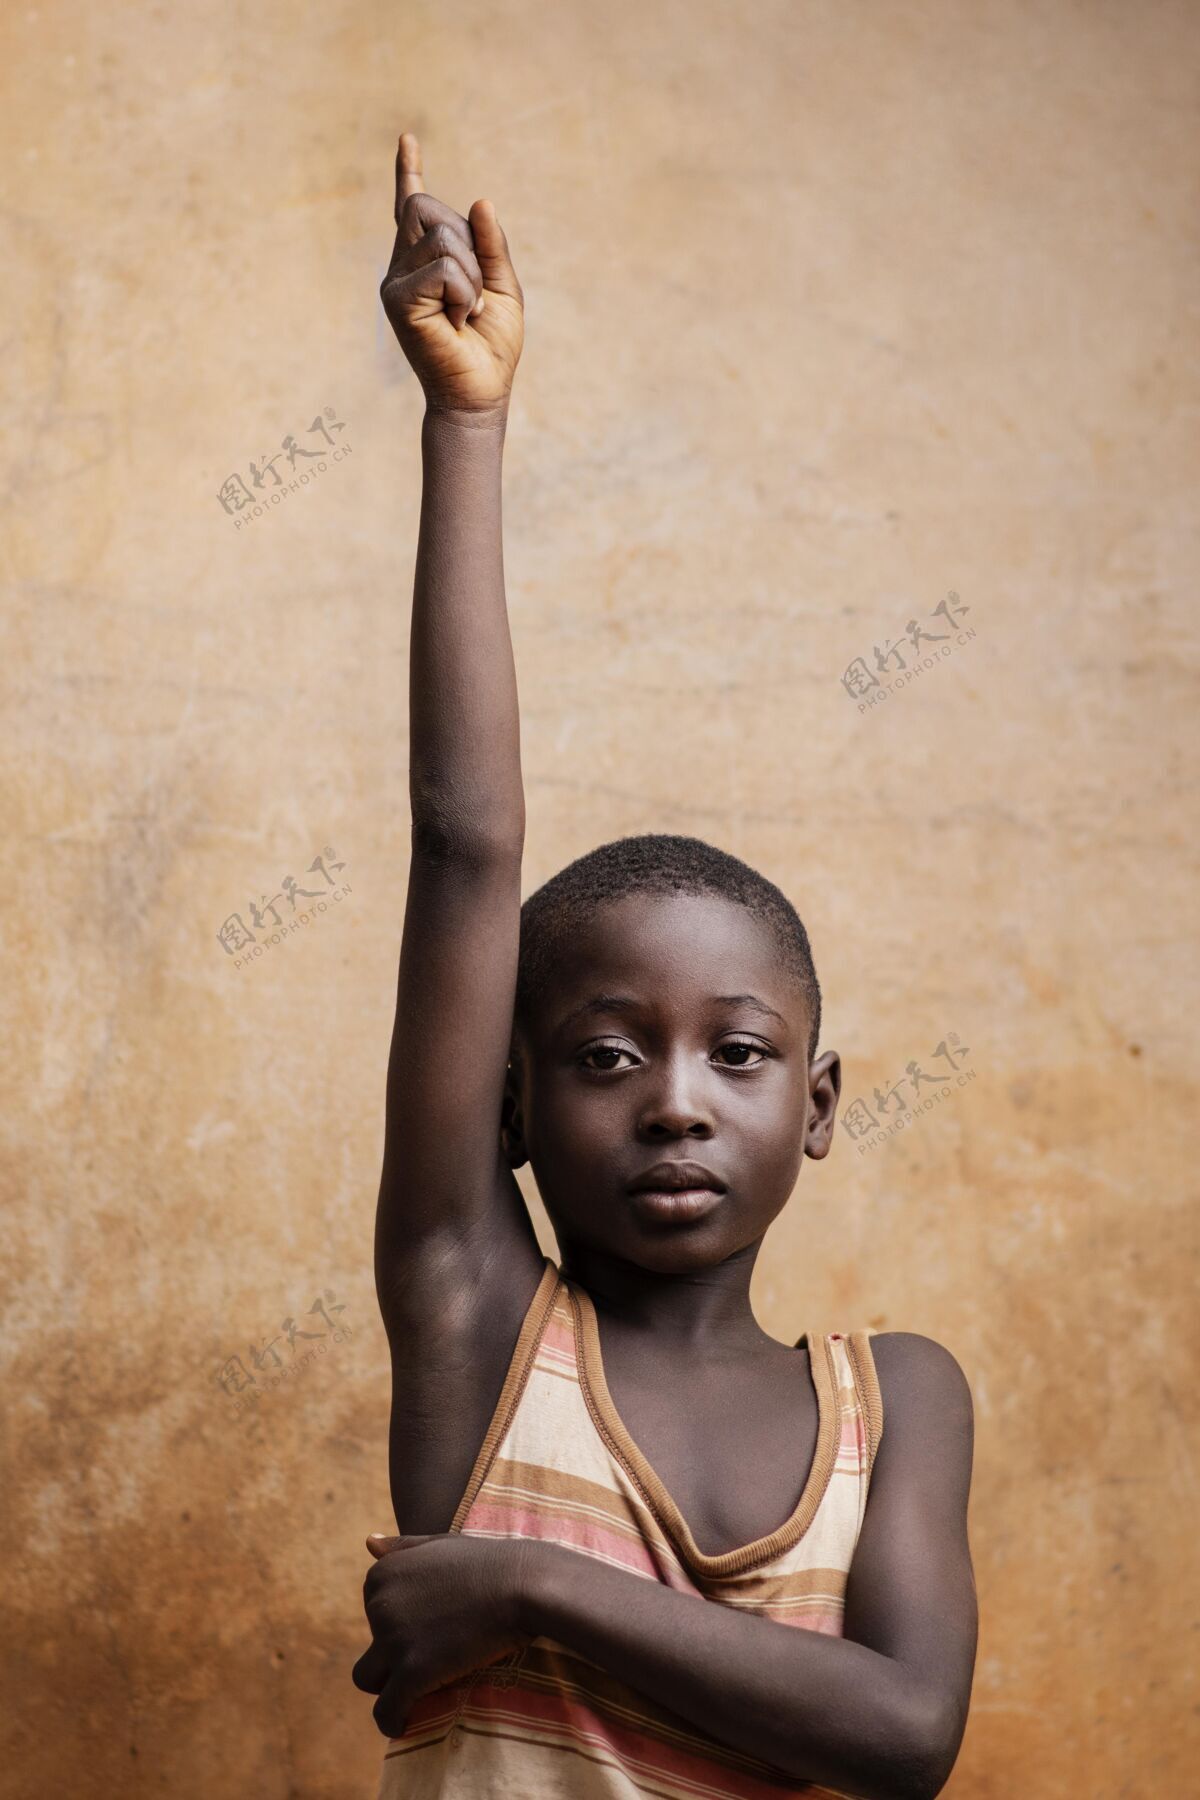 垂直中镜头表情小孩摆姿势贫困非洲非洲